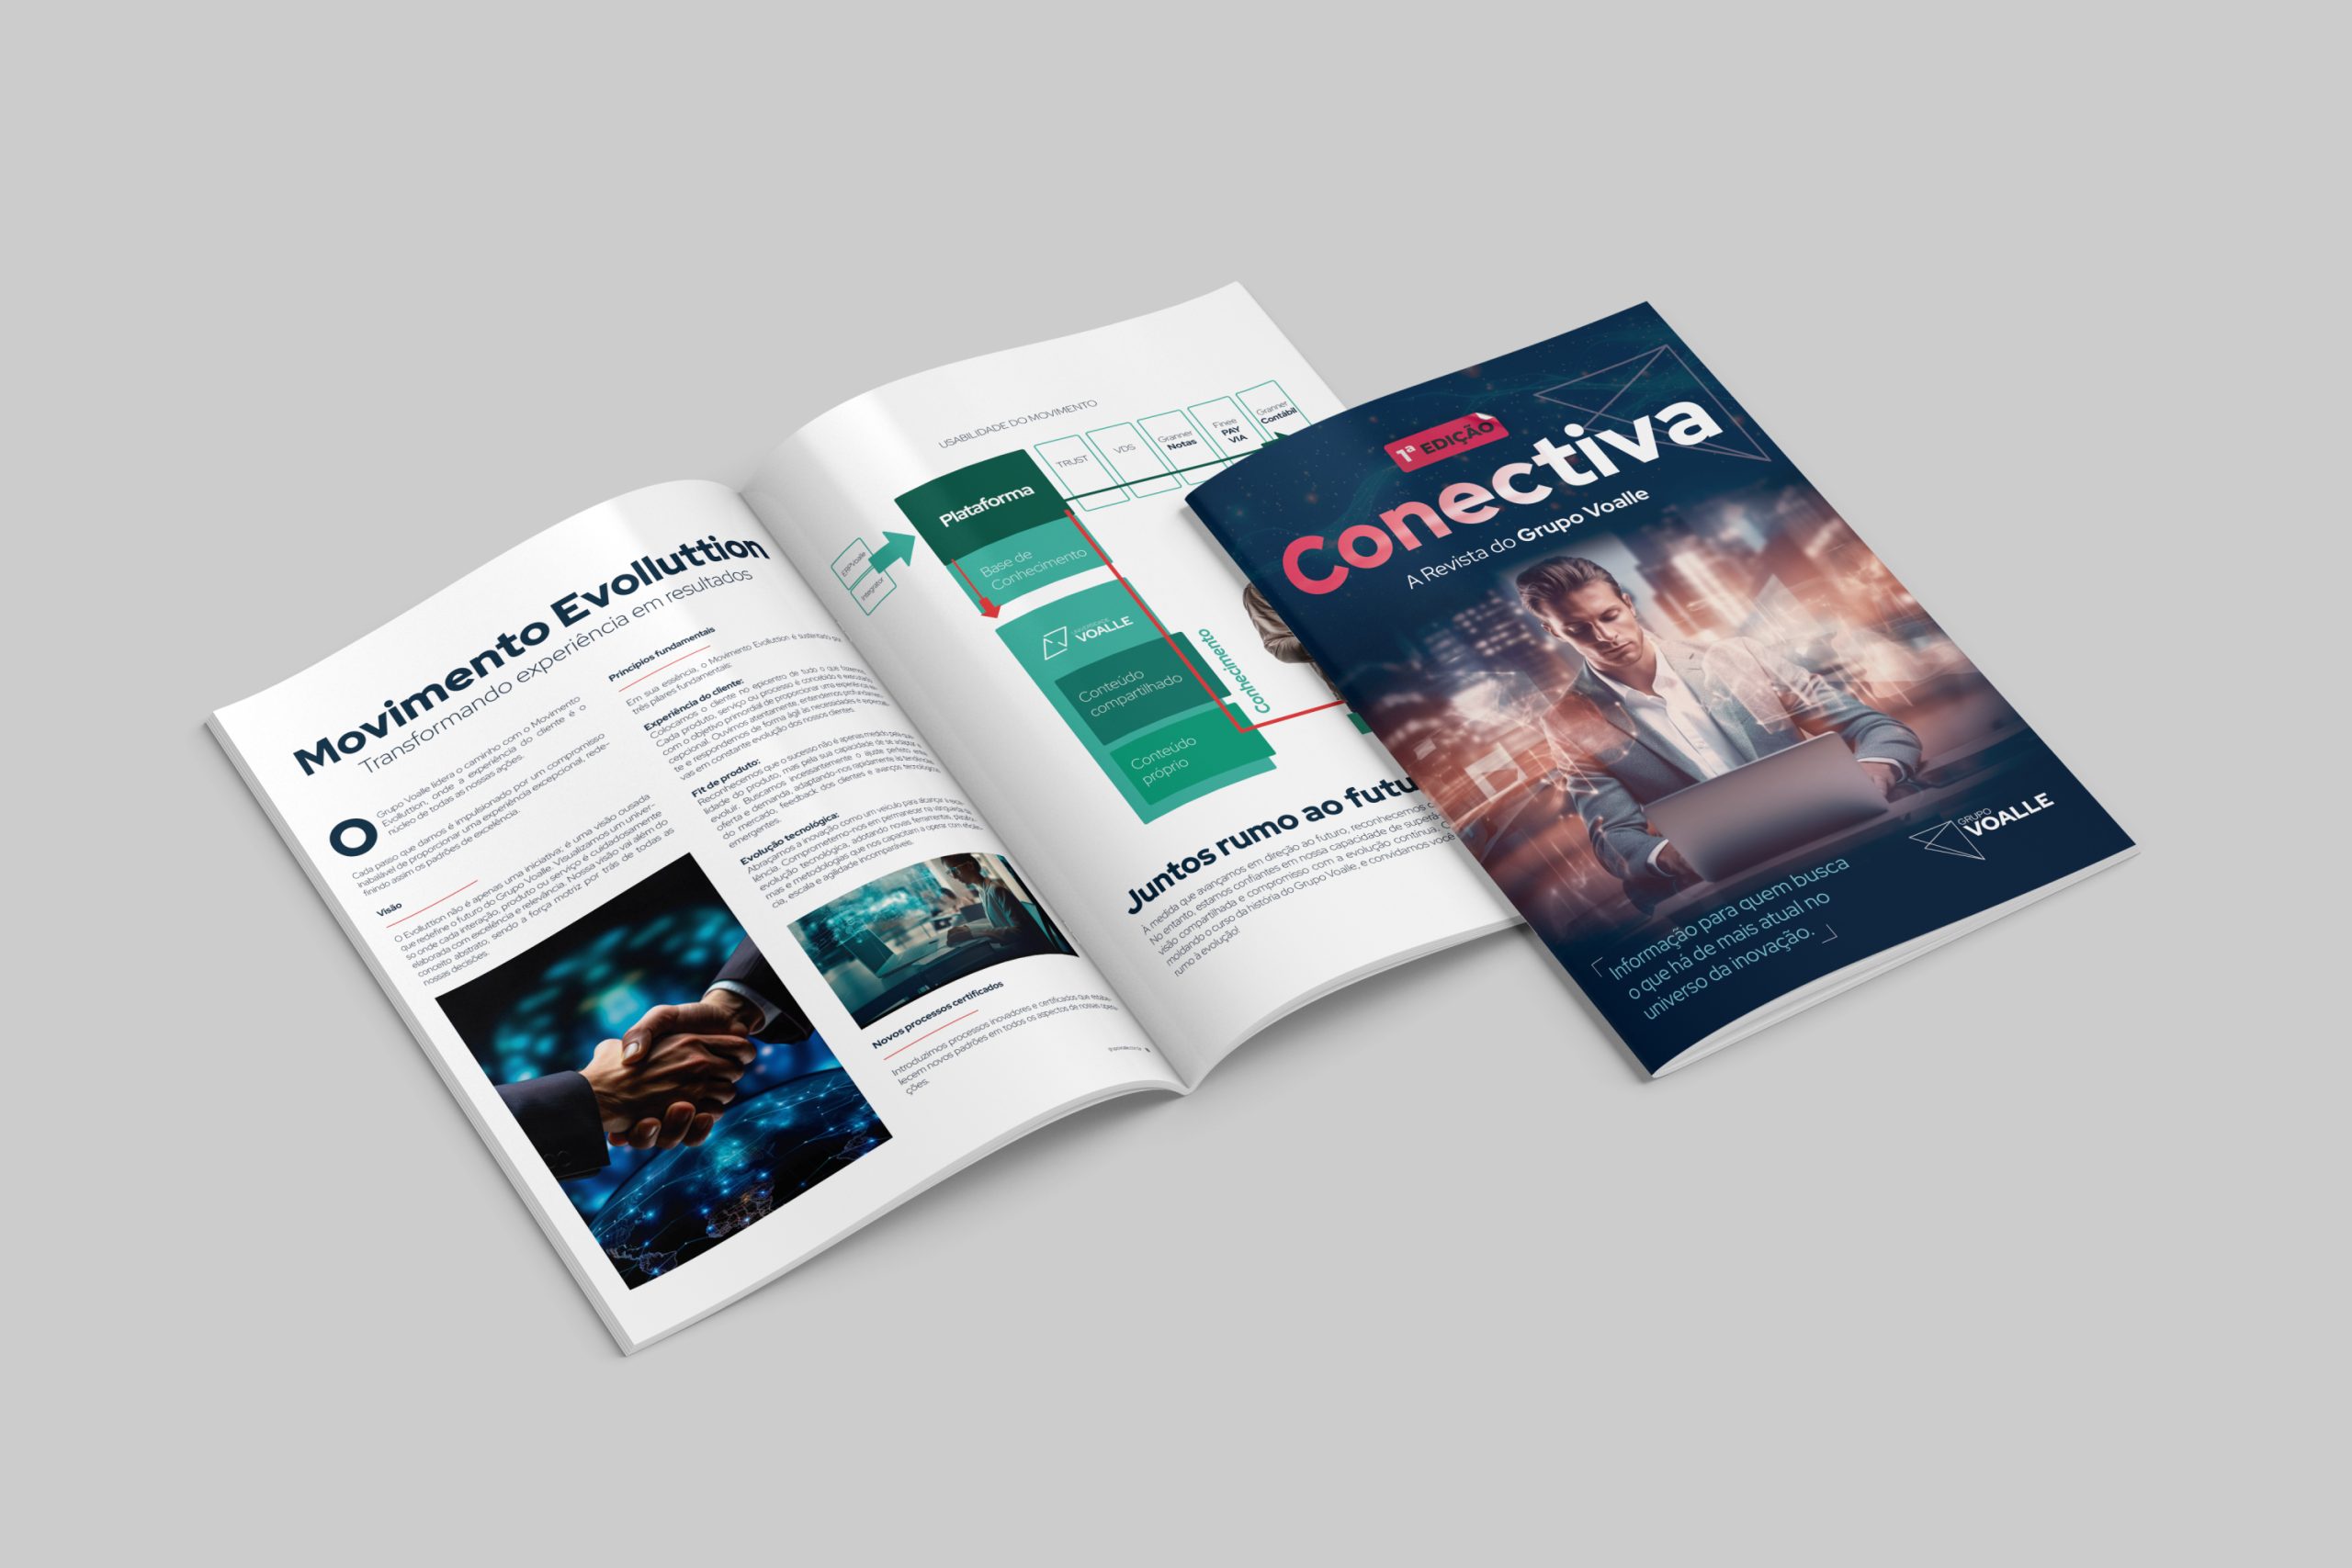 Vem aí o lançamento da 1ª edição da Conectiva, nossa revista oficial.